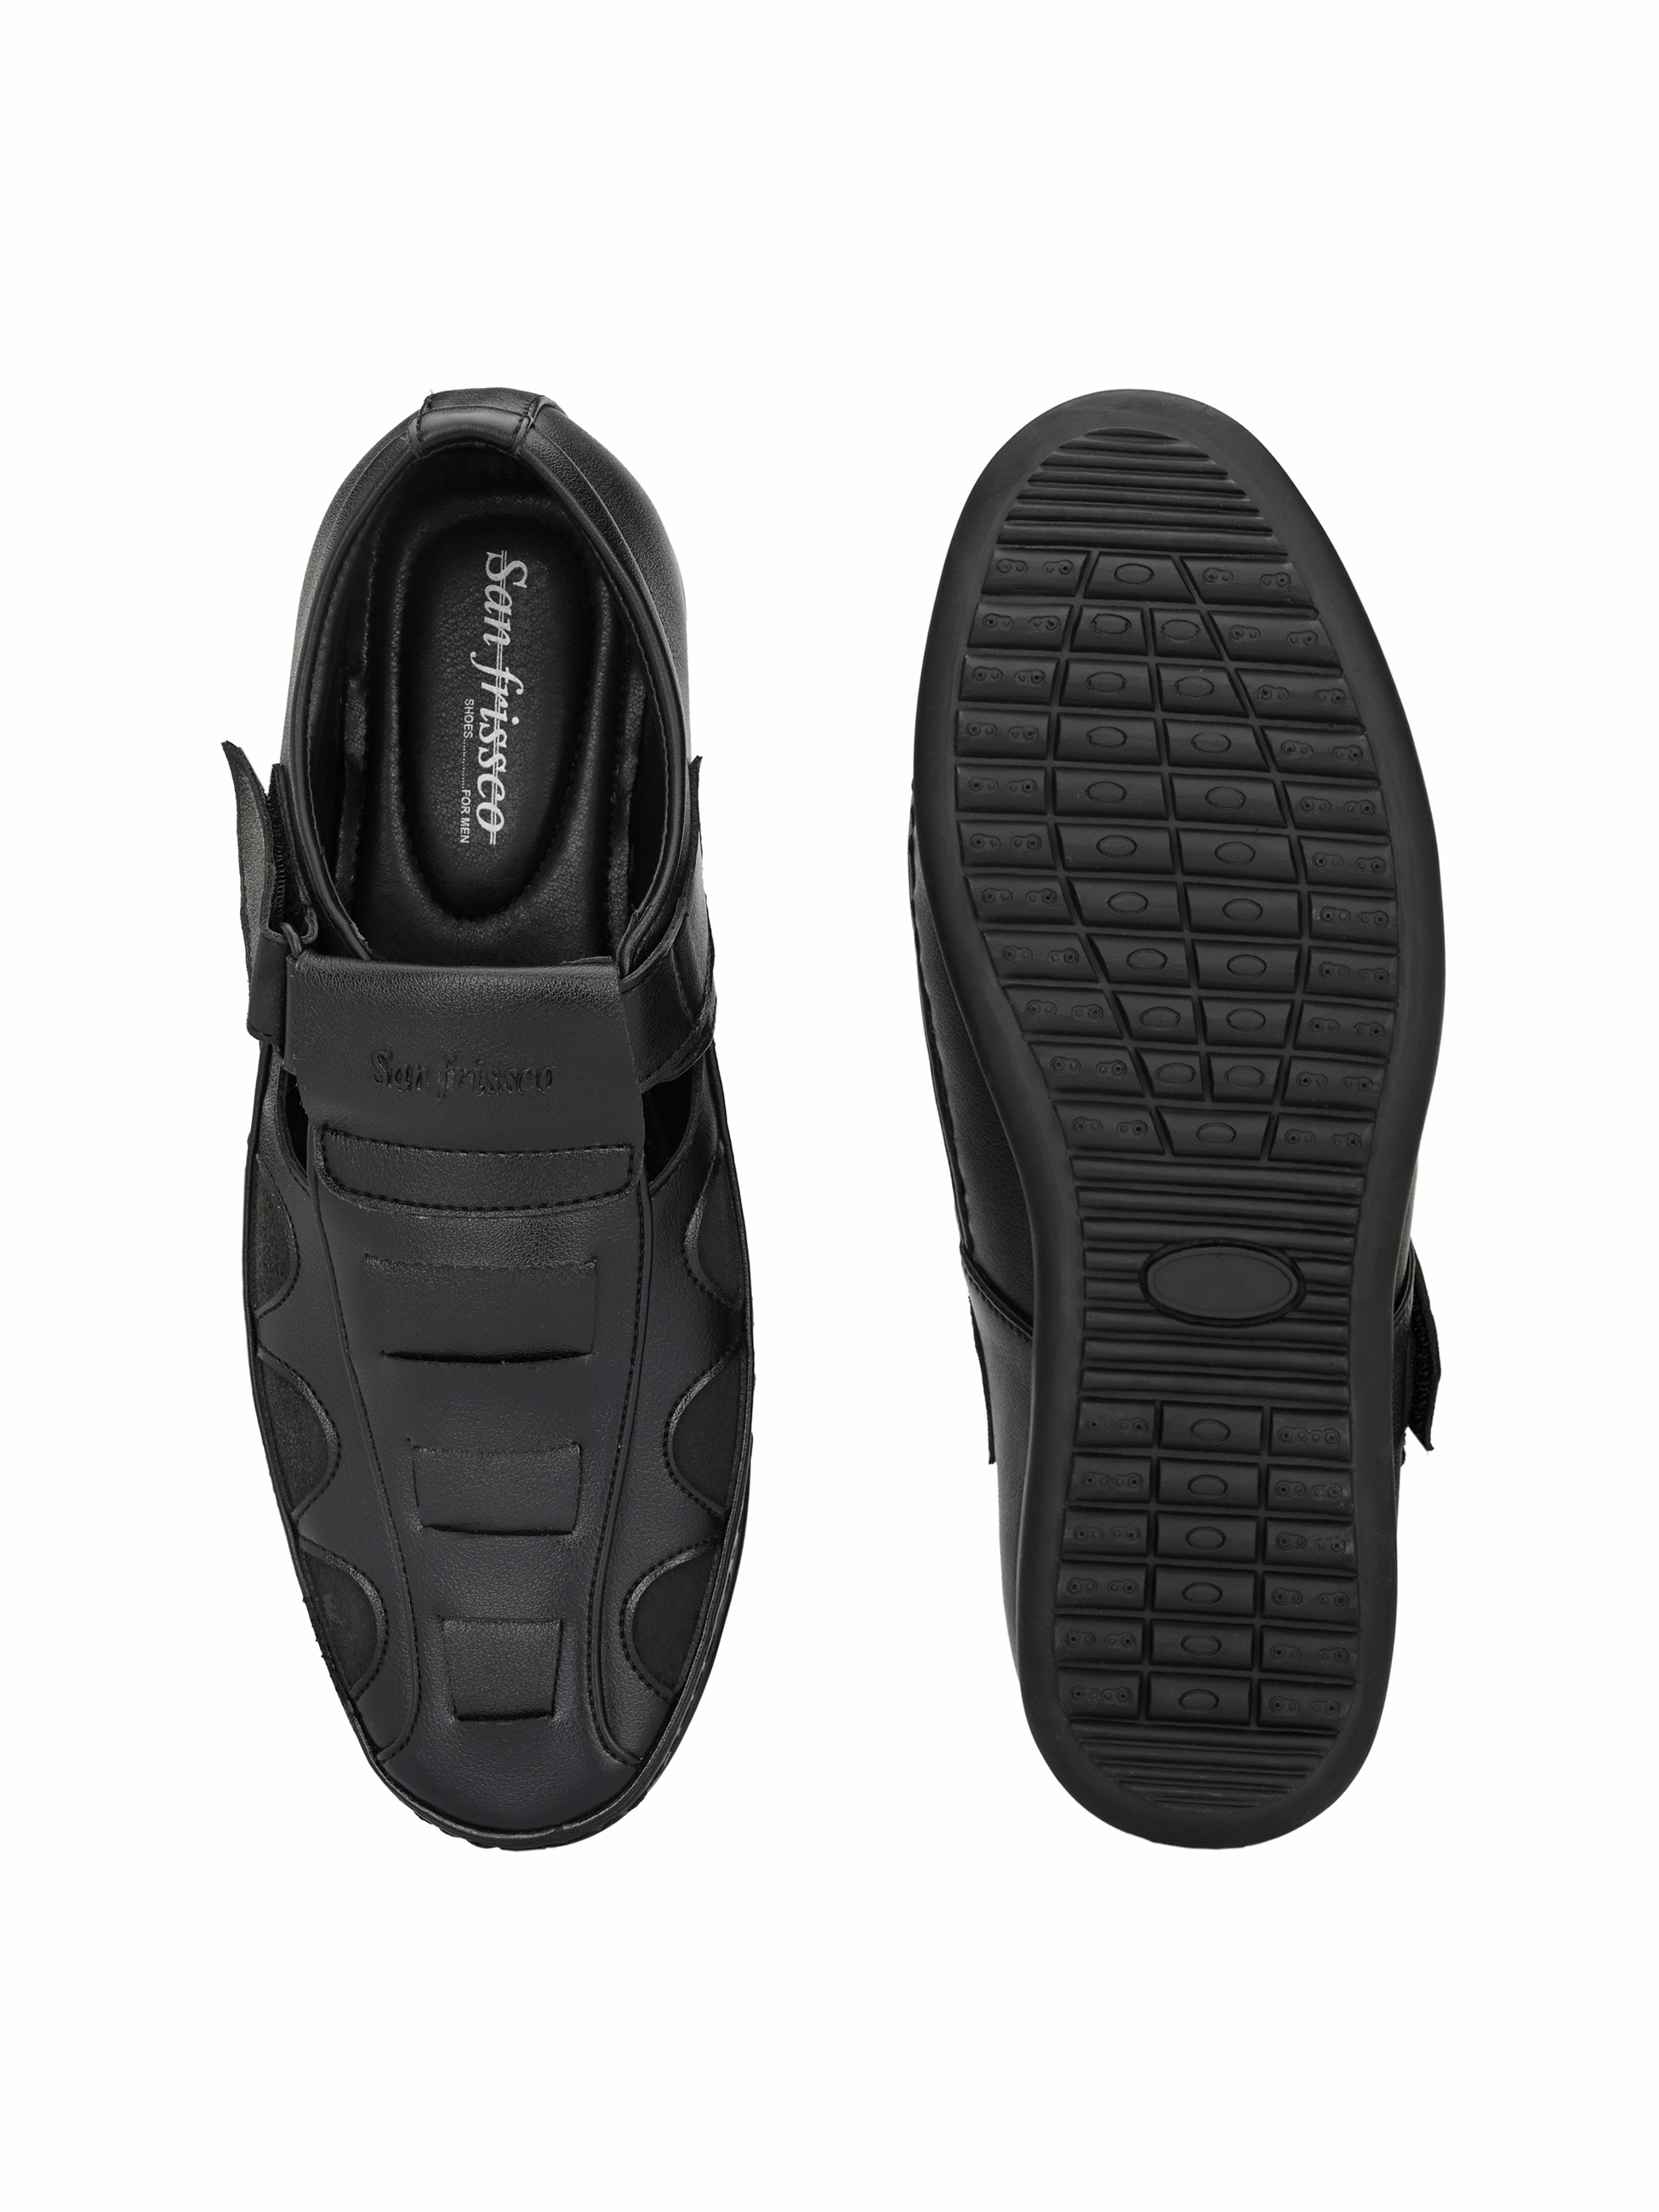 San Frissco | San Frissco Men's Faux Leather Ittar Black Sandals